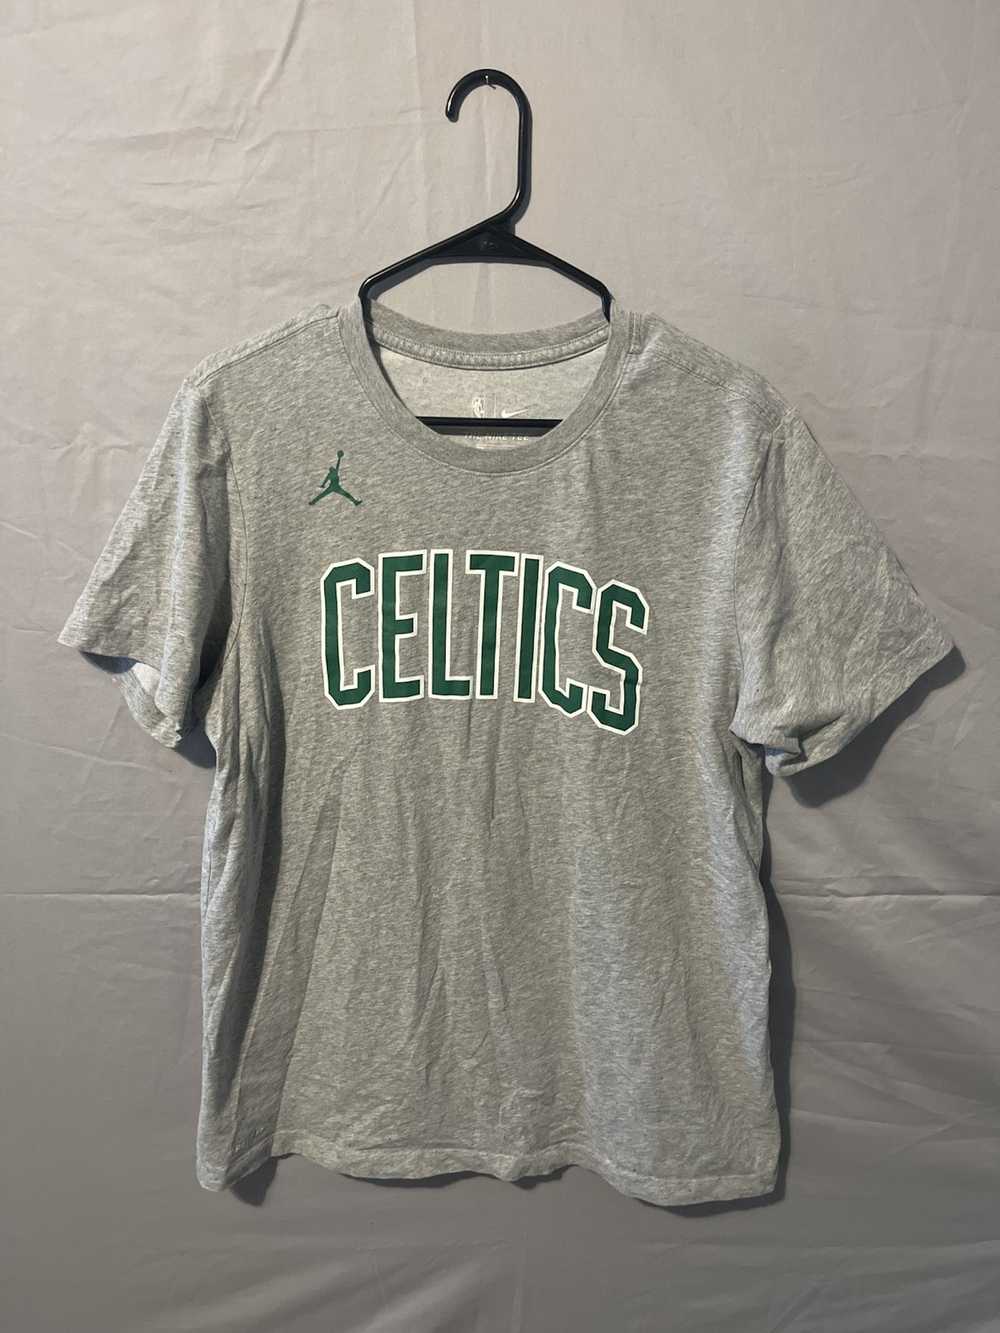 Boston Celtics × Jordan Brand × NBA Celtics Shirt - image 1